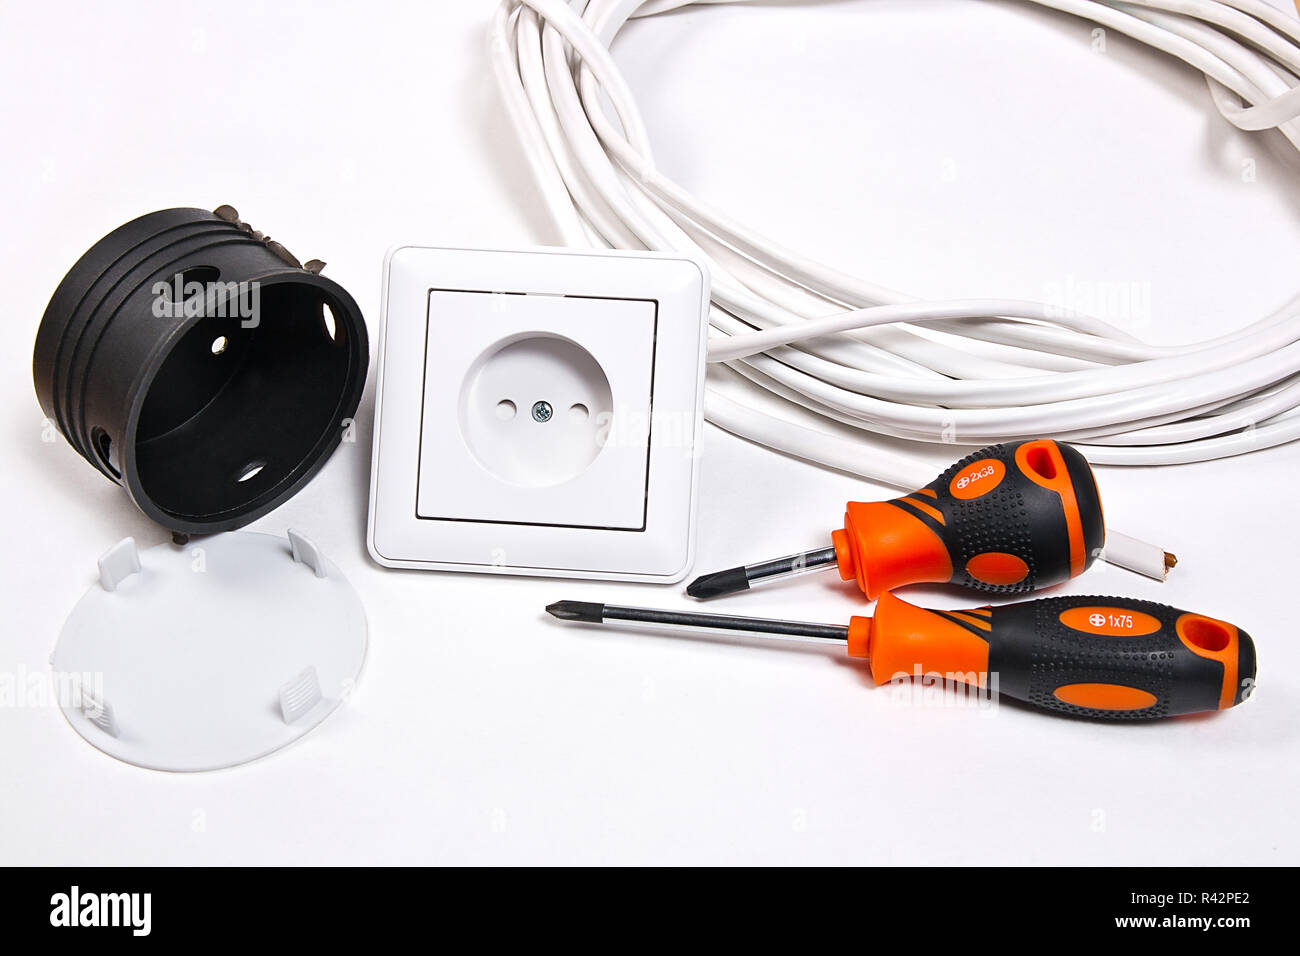 Elektriker Werkzeuge, Kabel, das für die Installation von Steckdosen und  Steckdose Stockfotografie - Alamy